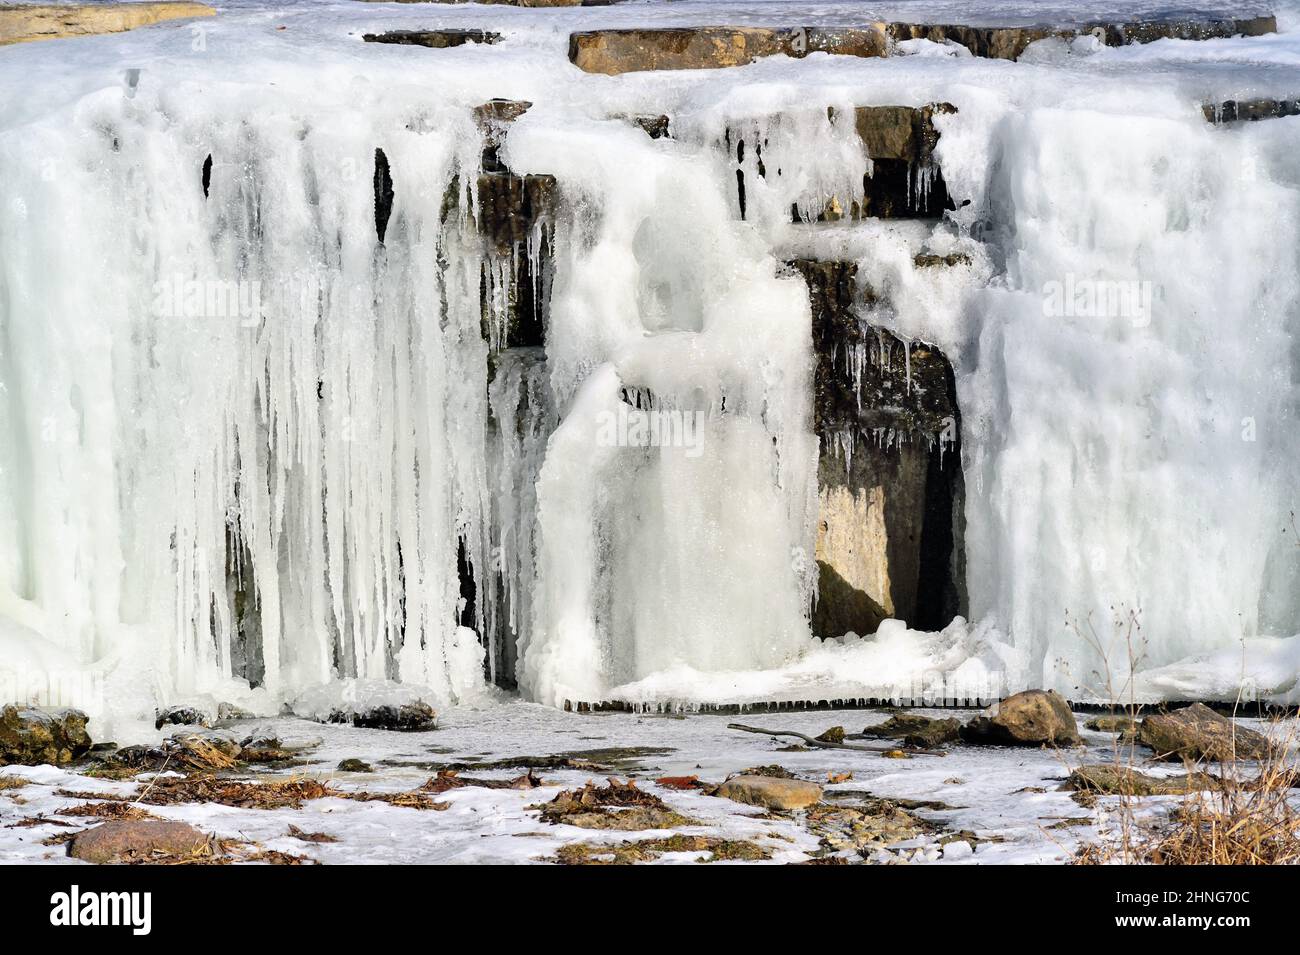 St. Charles, Illinois, USA. Ein Wasserfall in einem Bach, der durch kontinuierliche Temperaturen unter dem Gefrierpunkt gebildet wird. Stockfoto